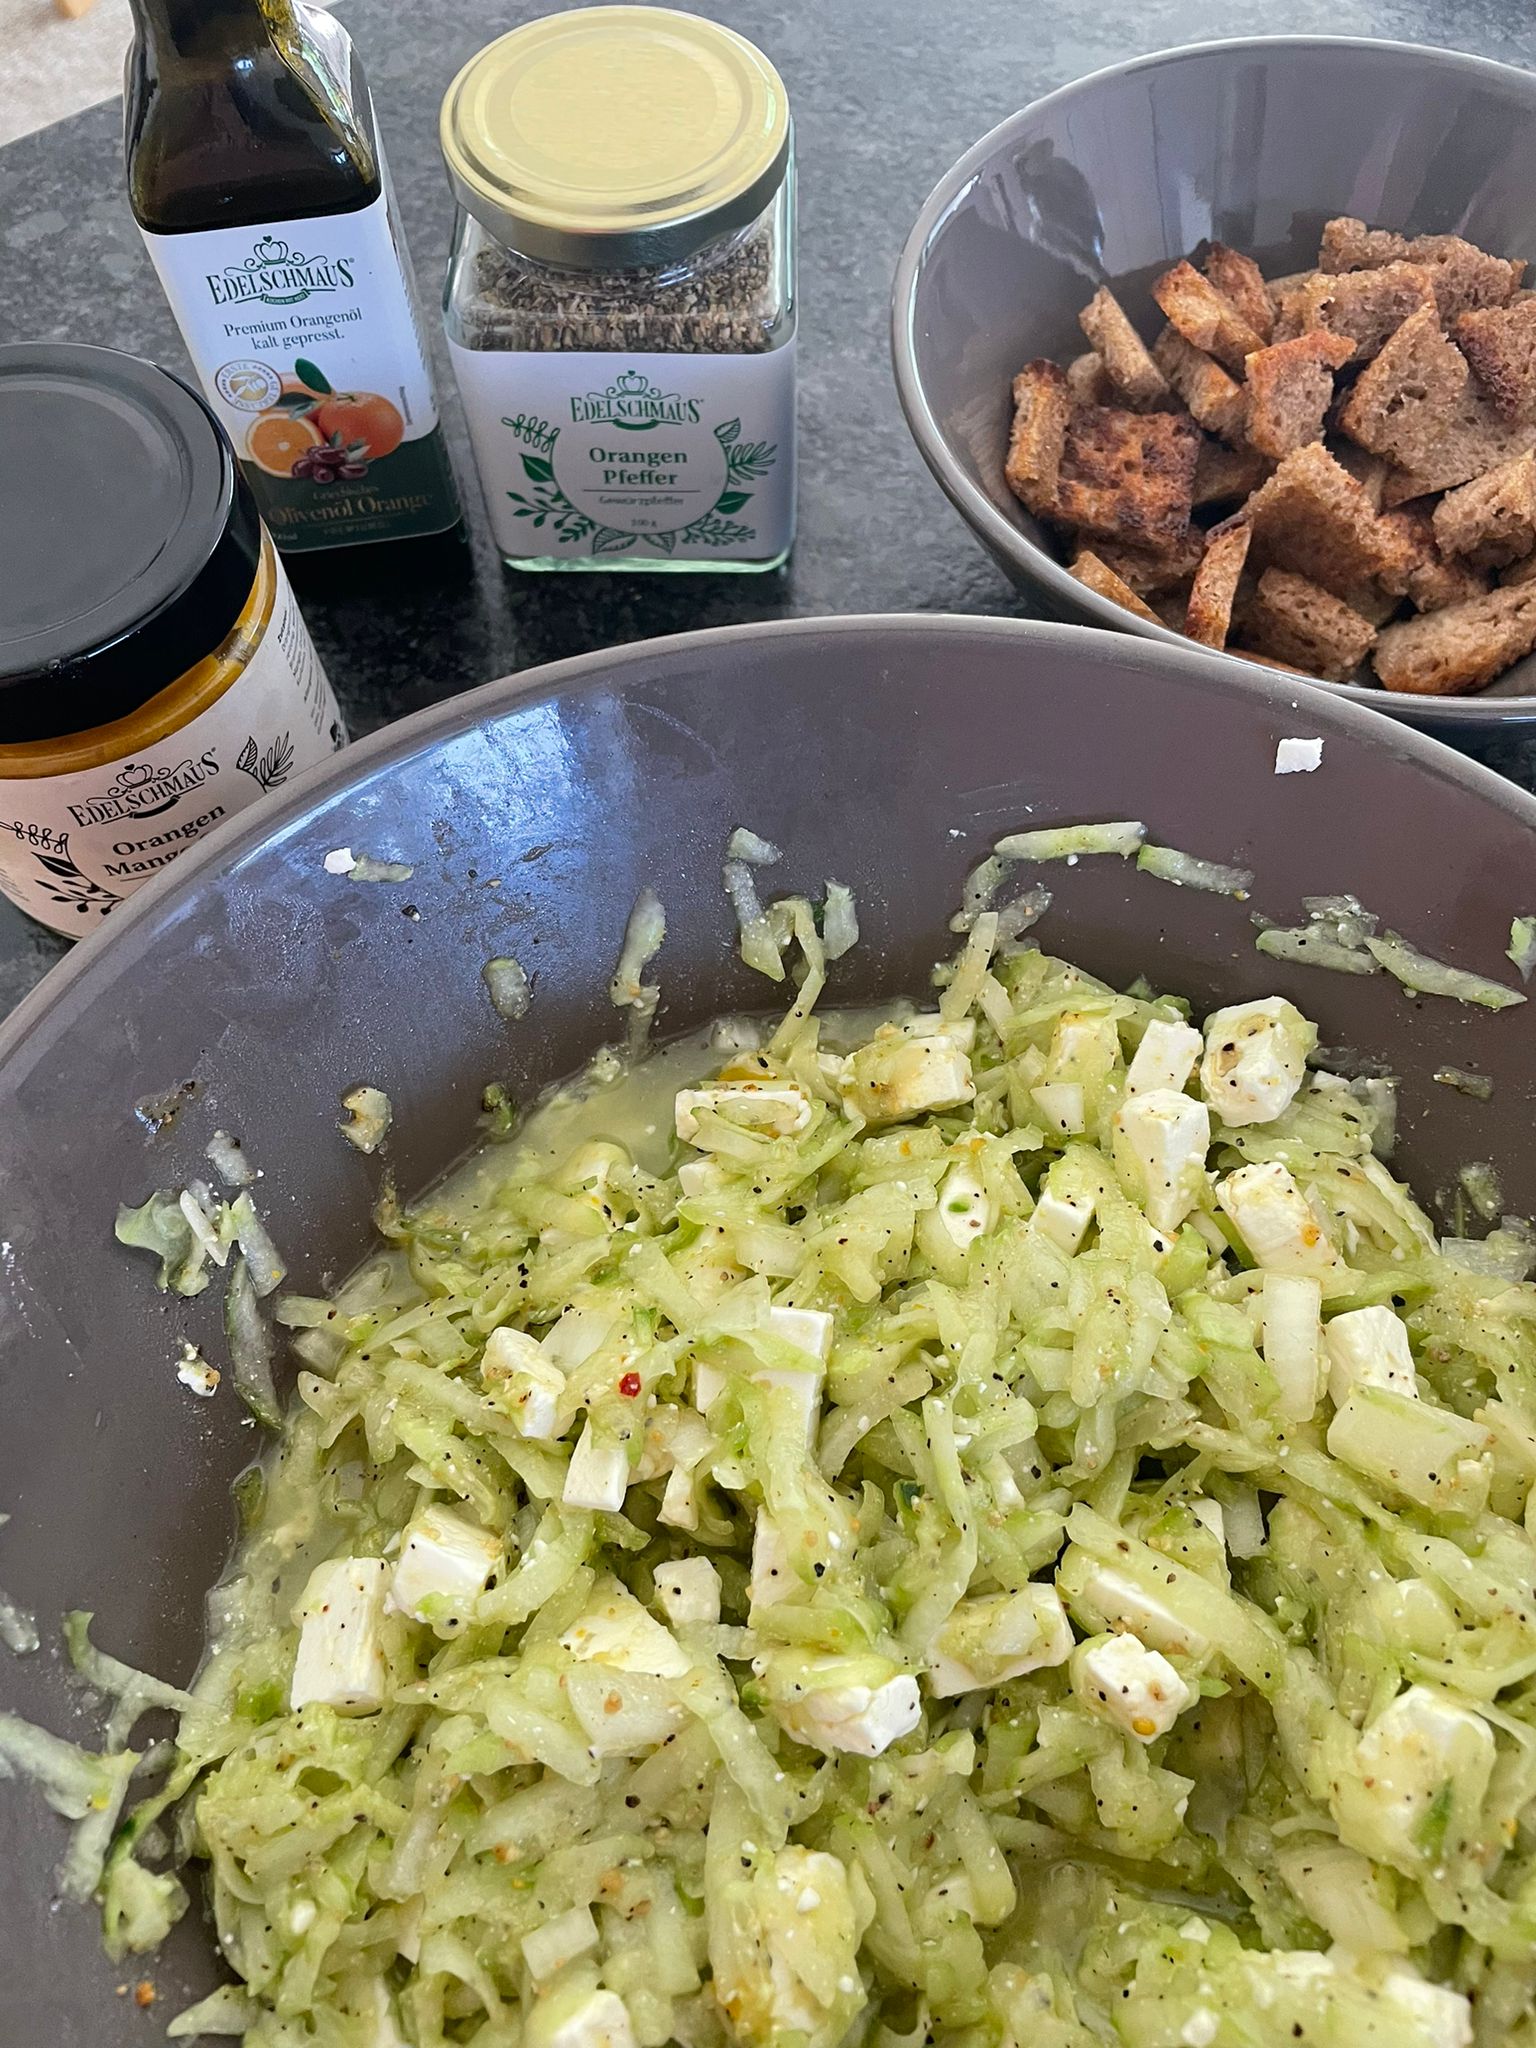 Gurken-Schafkäse Salat mit Orangenöl-Senf Dressing - Tines. Food. Passion